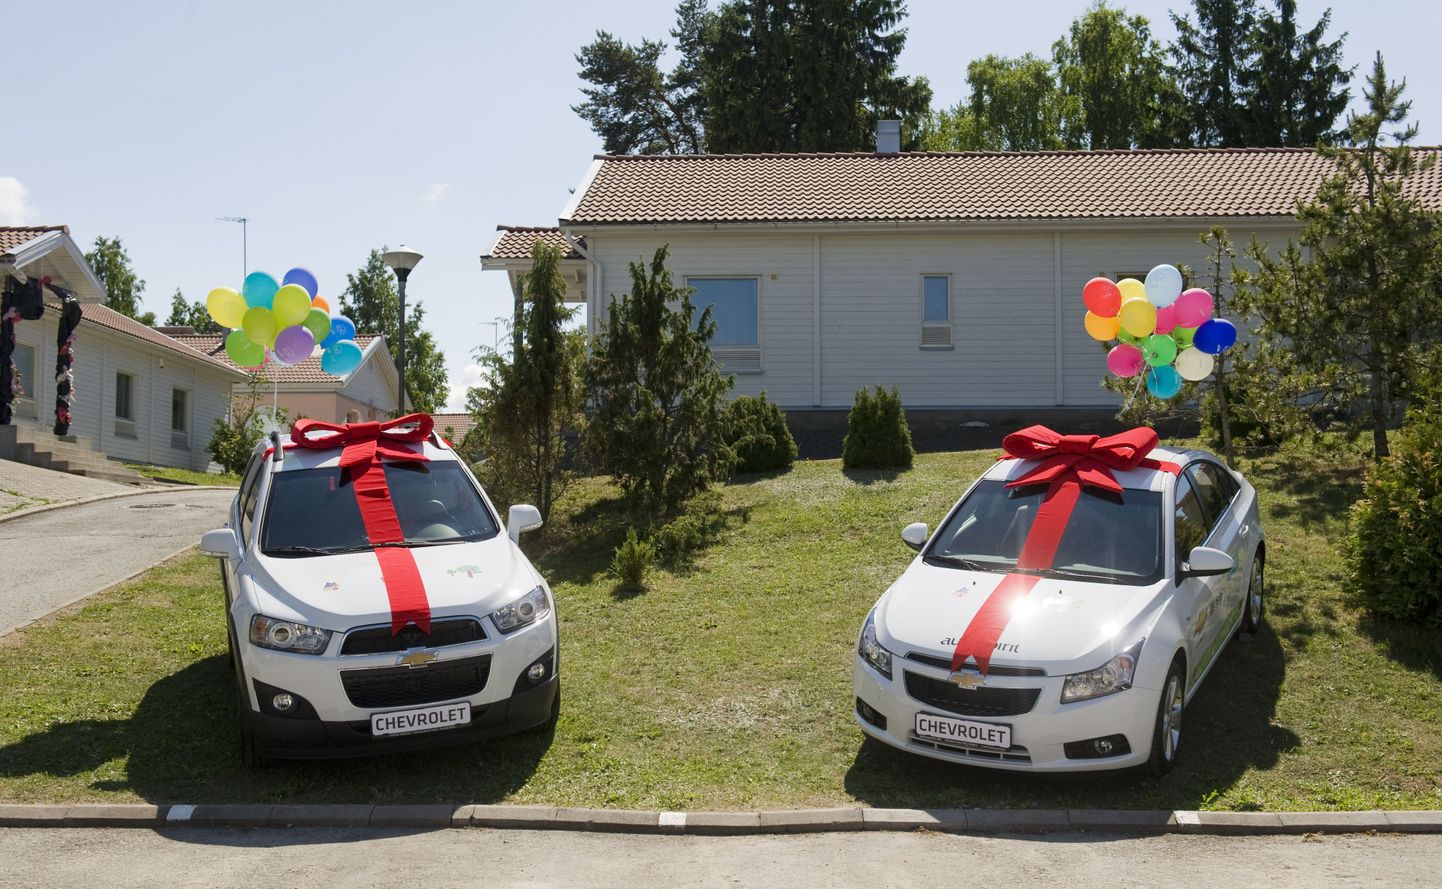 Keila SOS lasteküla sünnipäev. Chevrolet kinkis Keila ja Põltsama SOS lasteküladele 2011. aastal auto.